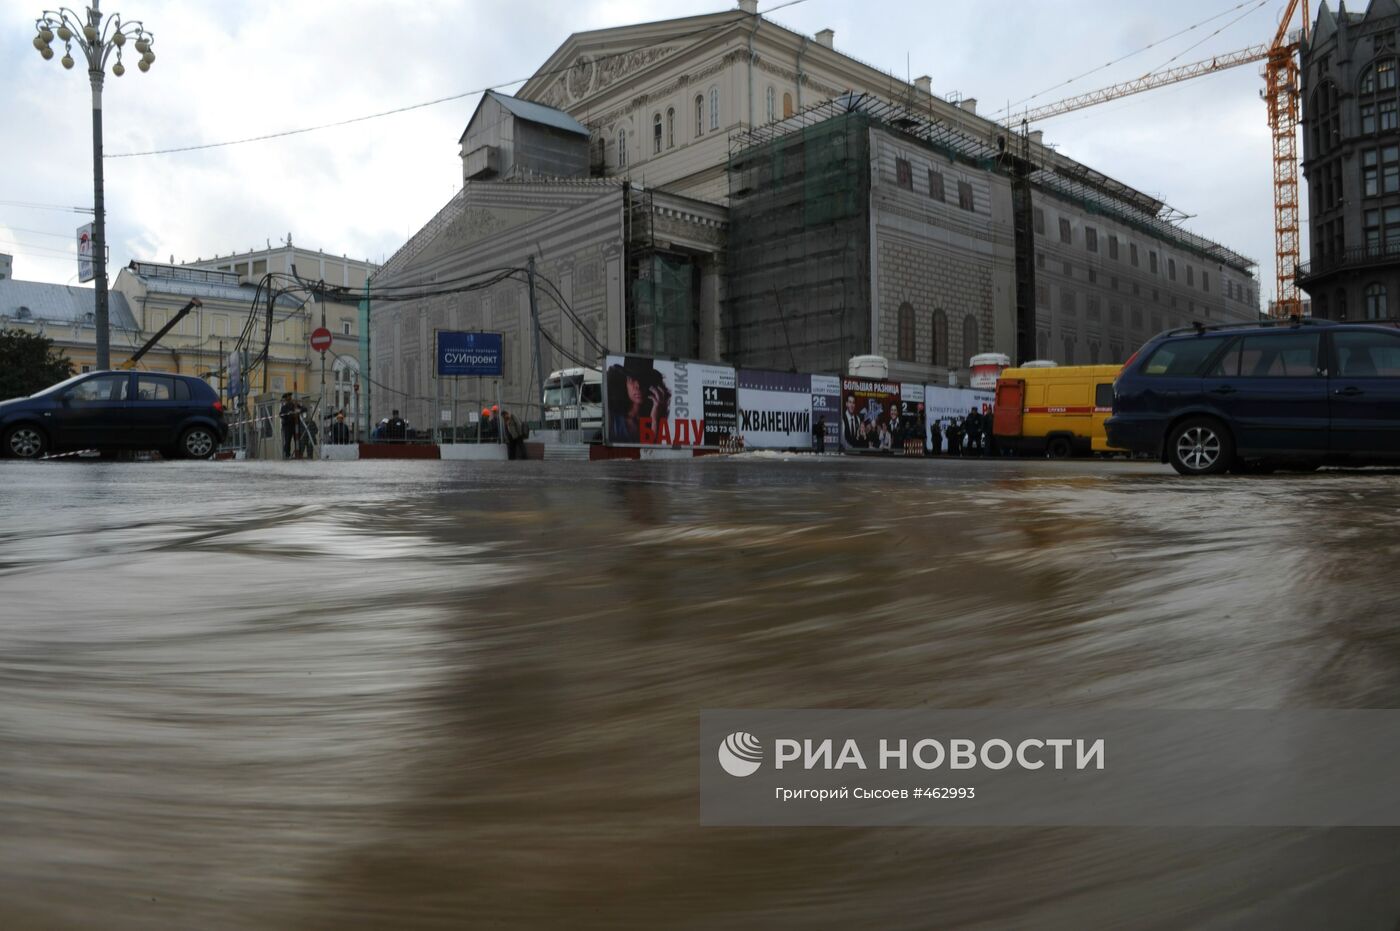 Авария на водопроводе у здания Большого театра в Москве